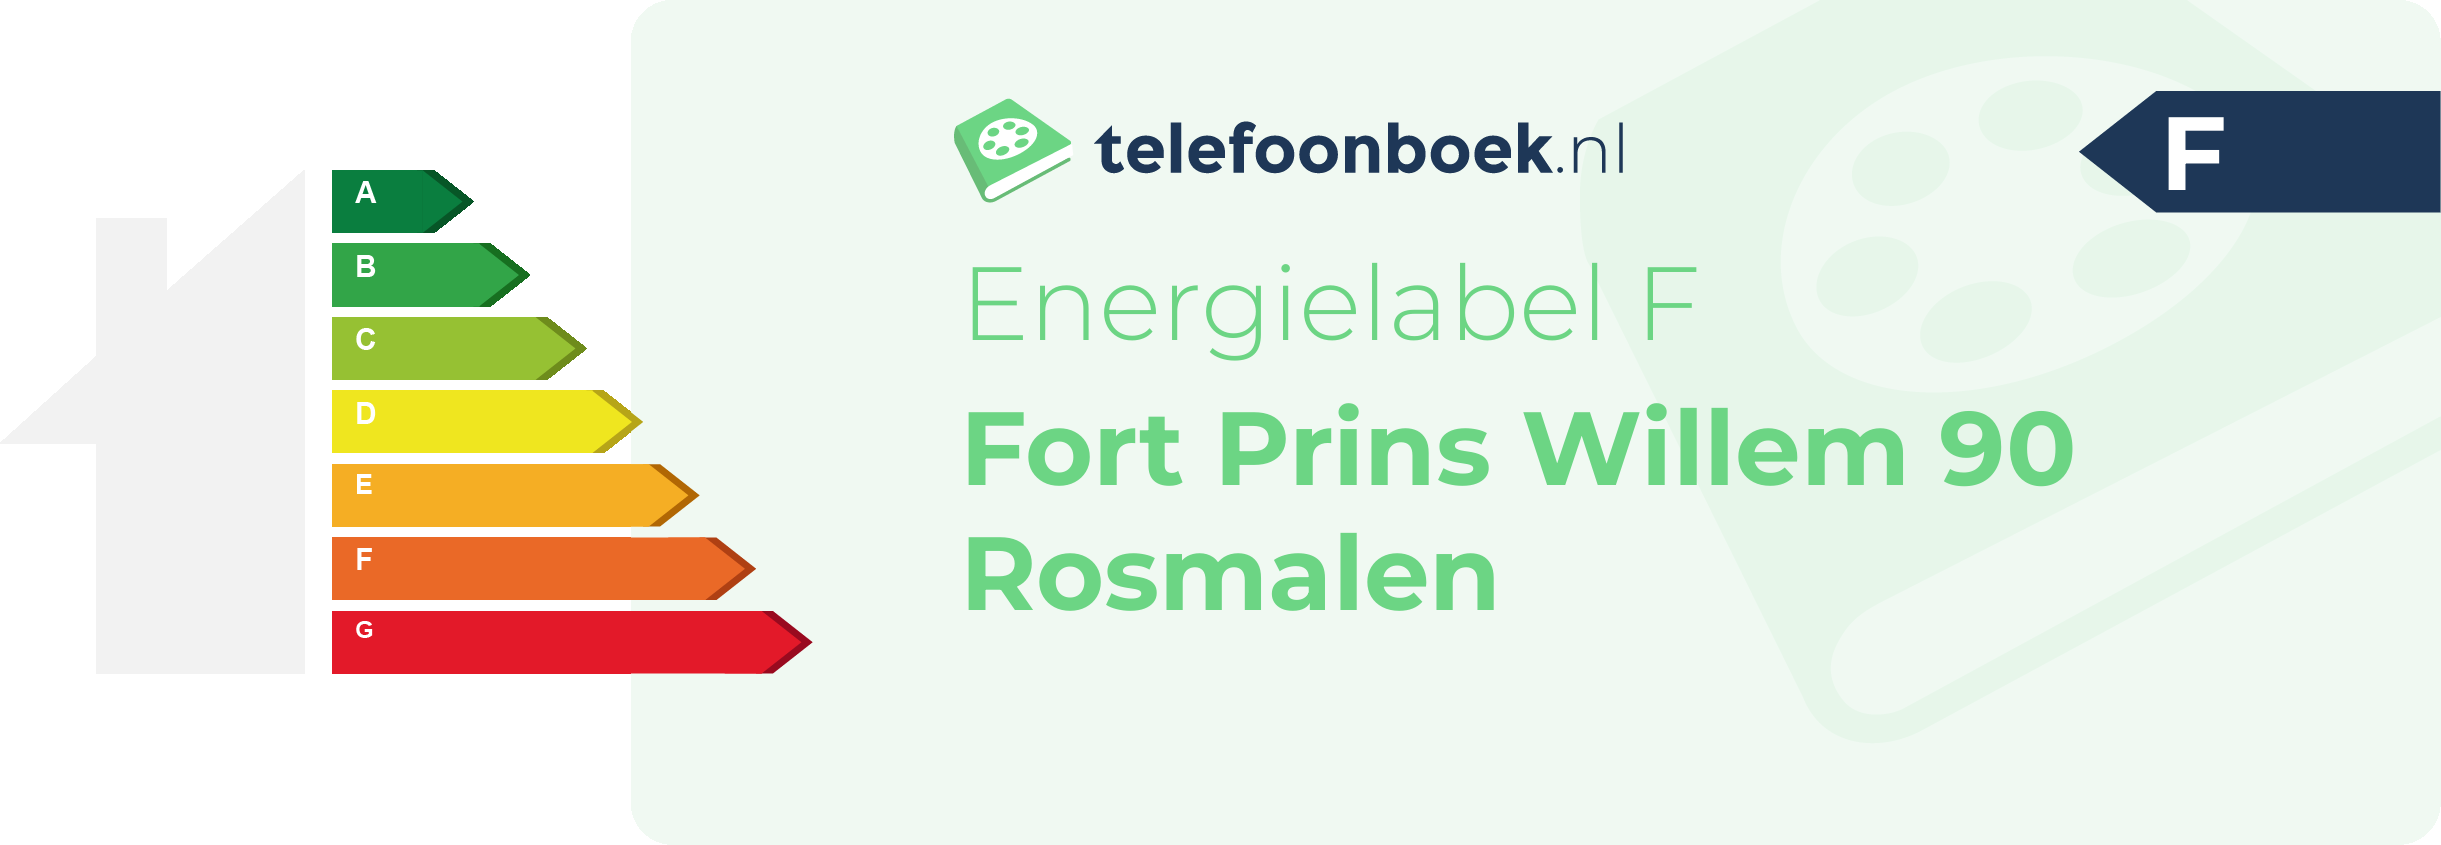 Energielabel Fort Prins Willem 90 Rosmalen